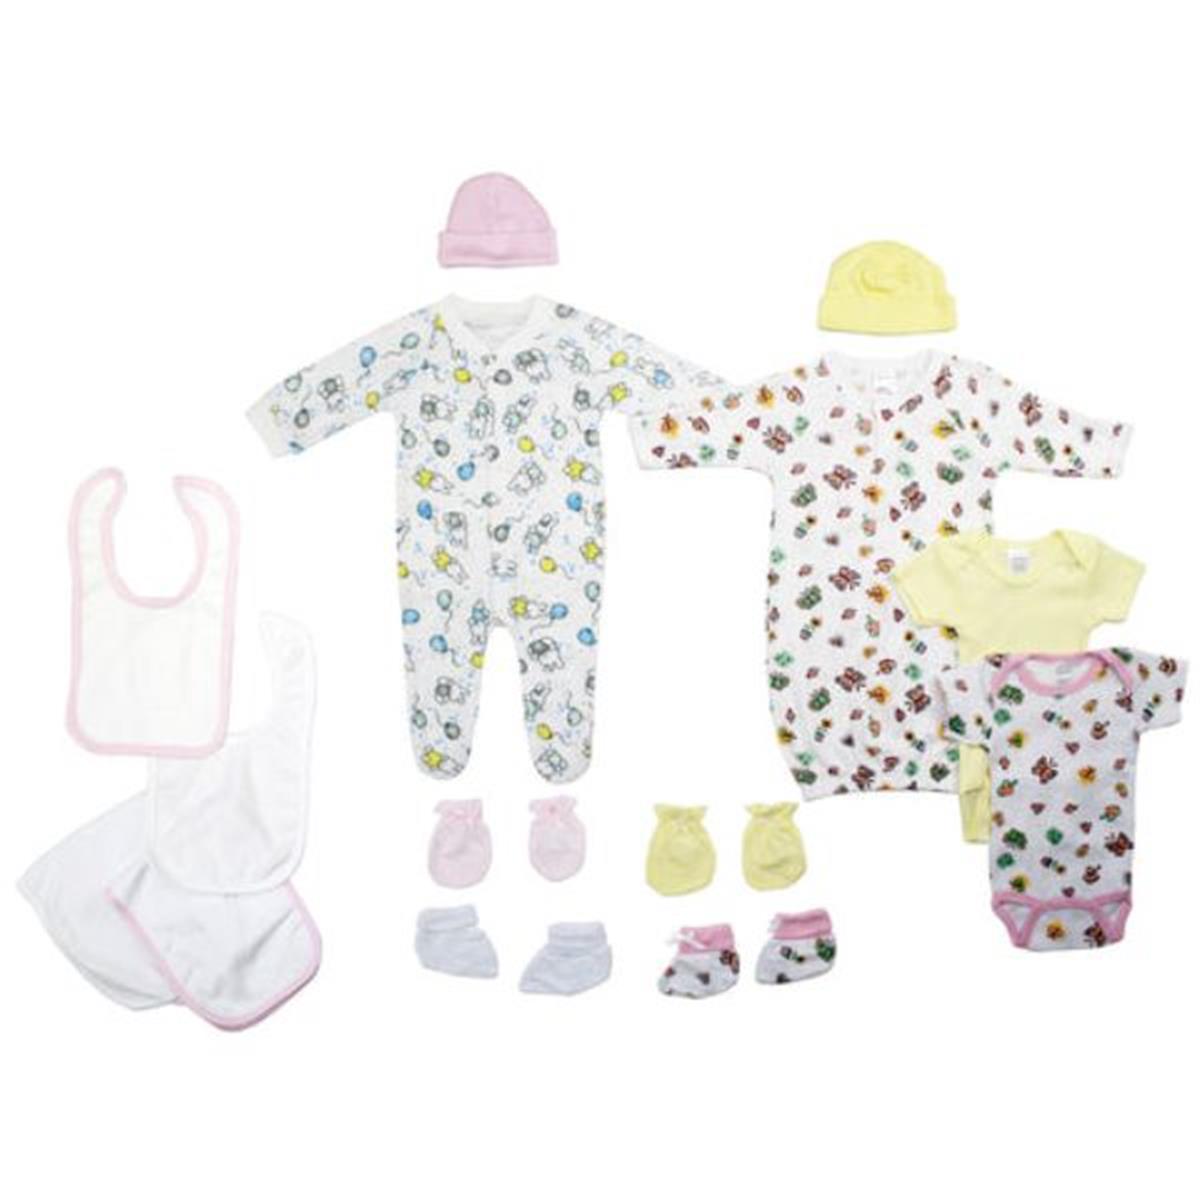 Bambini LS-0135 Newborn Baby Girls Layette Baby Shower Gift Set&#44; White & Pink - Newborn